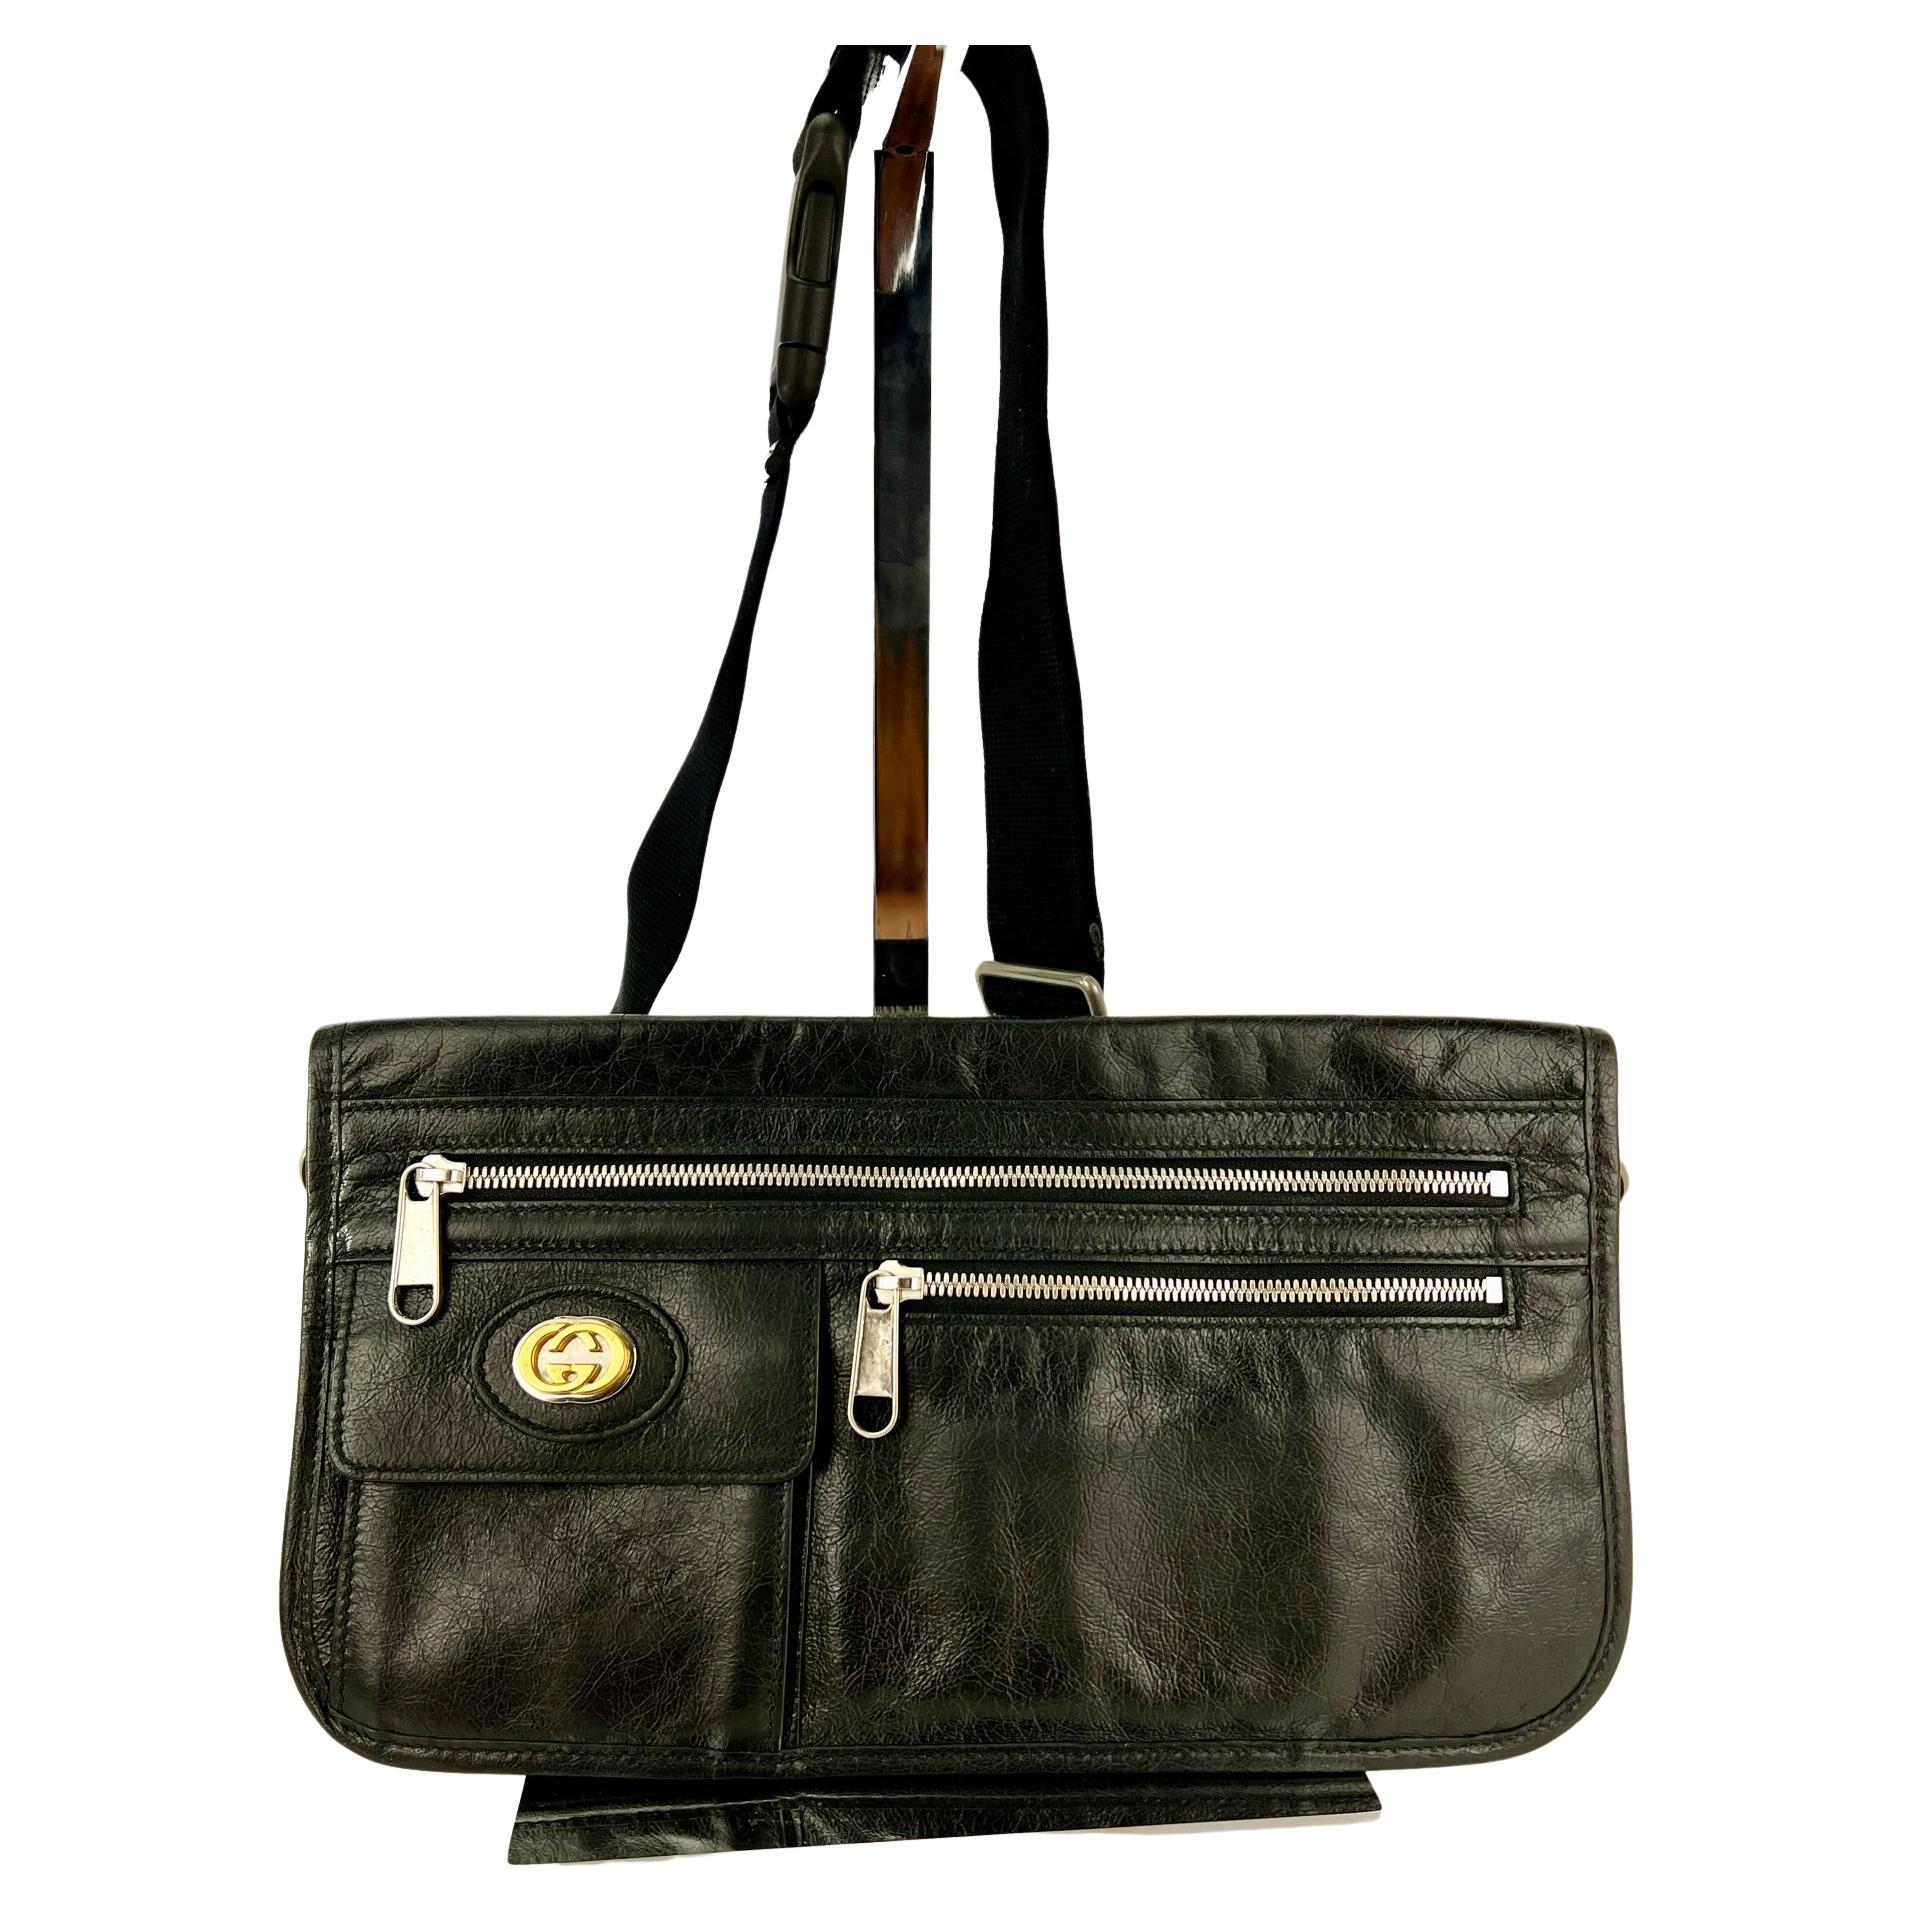 Gucci Messenger Bag Interlocking G Black Leather Crossbody Shoulder Bag For Sale